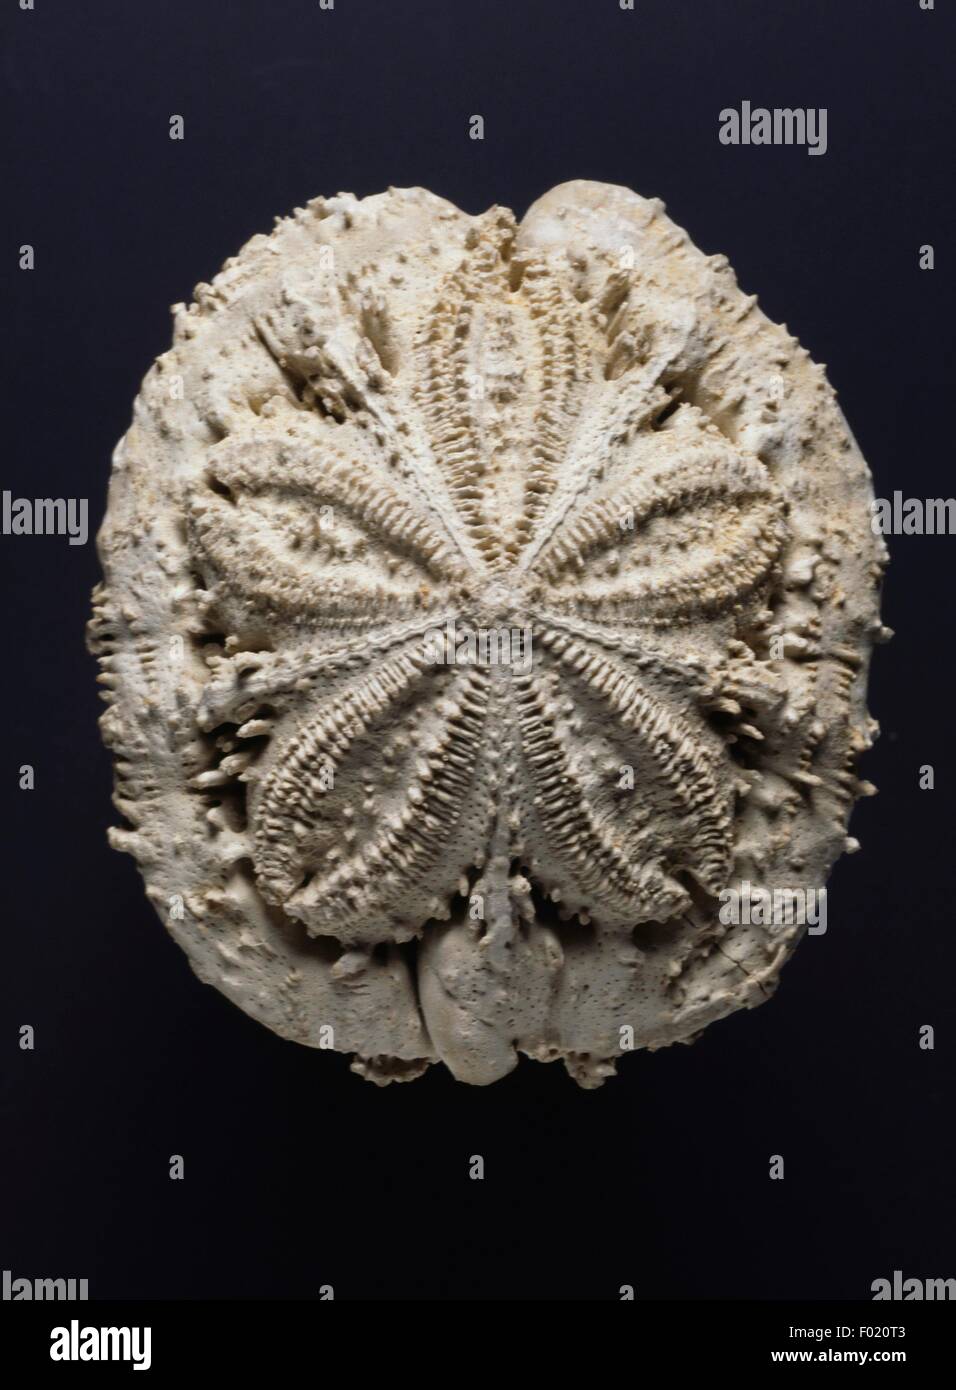 Fossil eines Clypeasteroida, Stachelhäuter, Neogen. Stockfoto